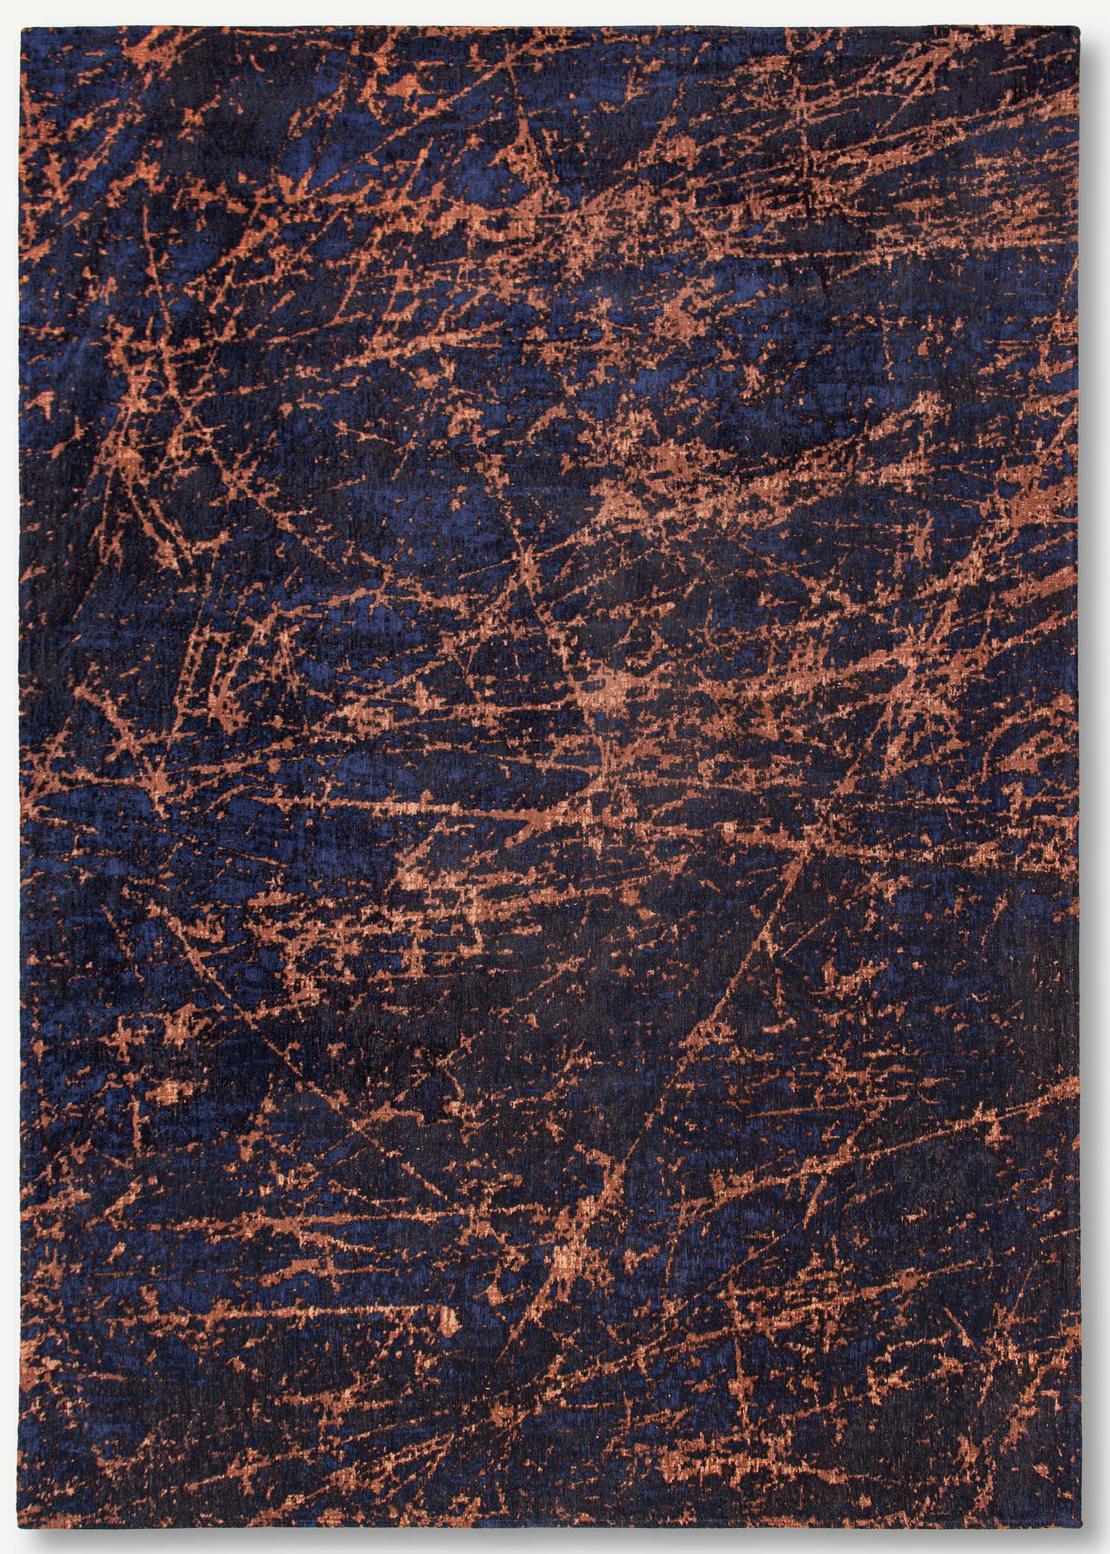 Art Black & Orange Belgian Rug ☞ Size: 5' 7" x 8' (170 x 240 cm)